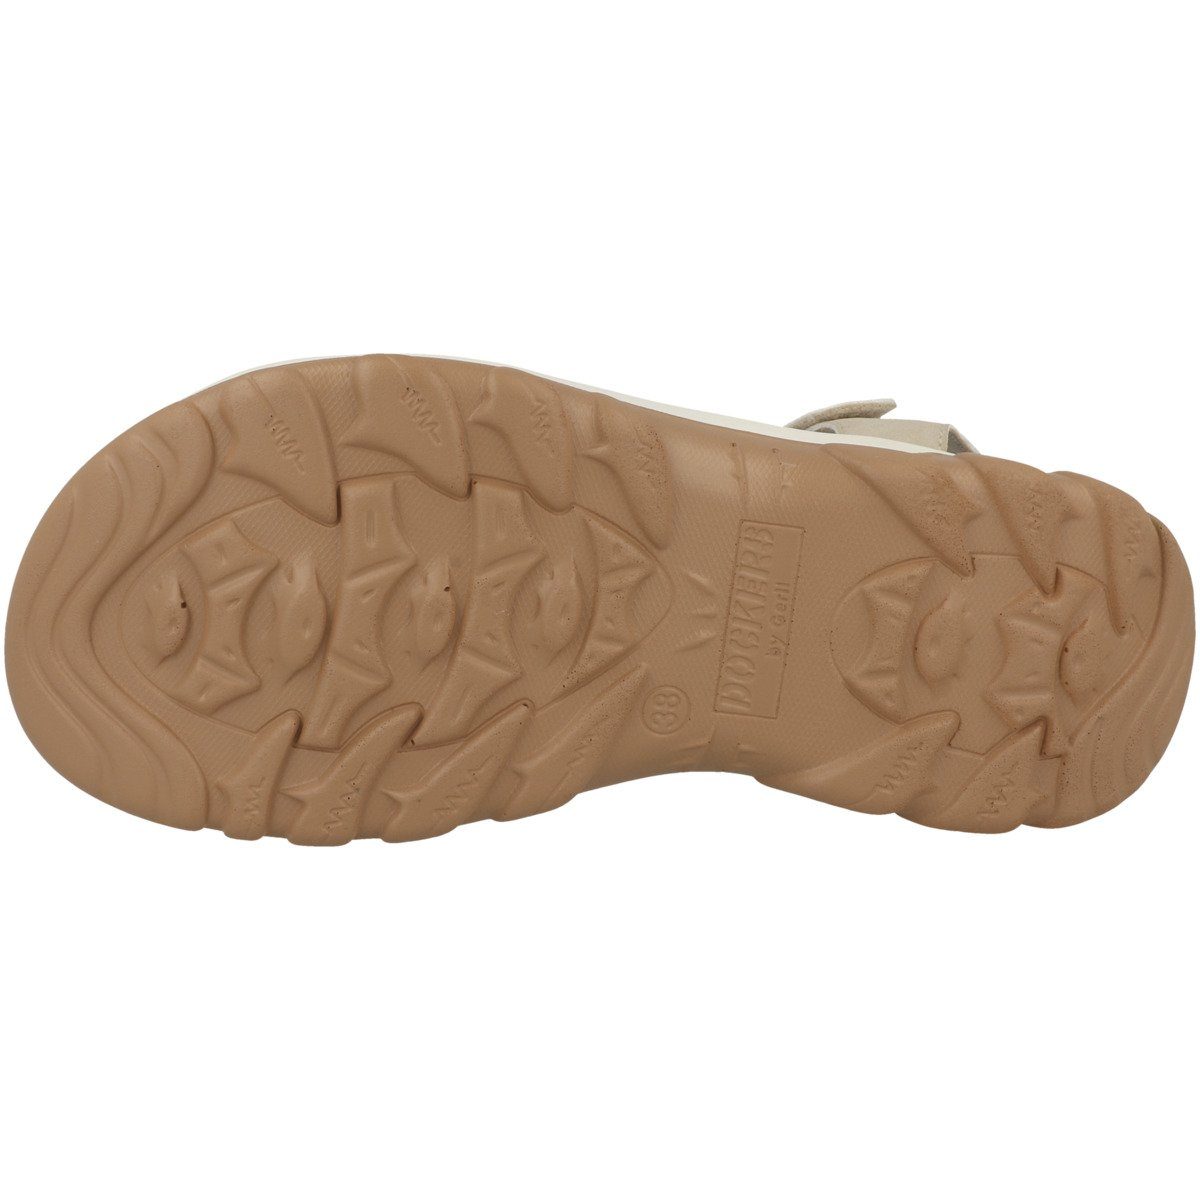 Sandale 50PC904 beige by Damen Gerli Dockers